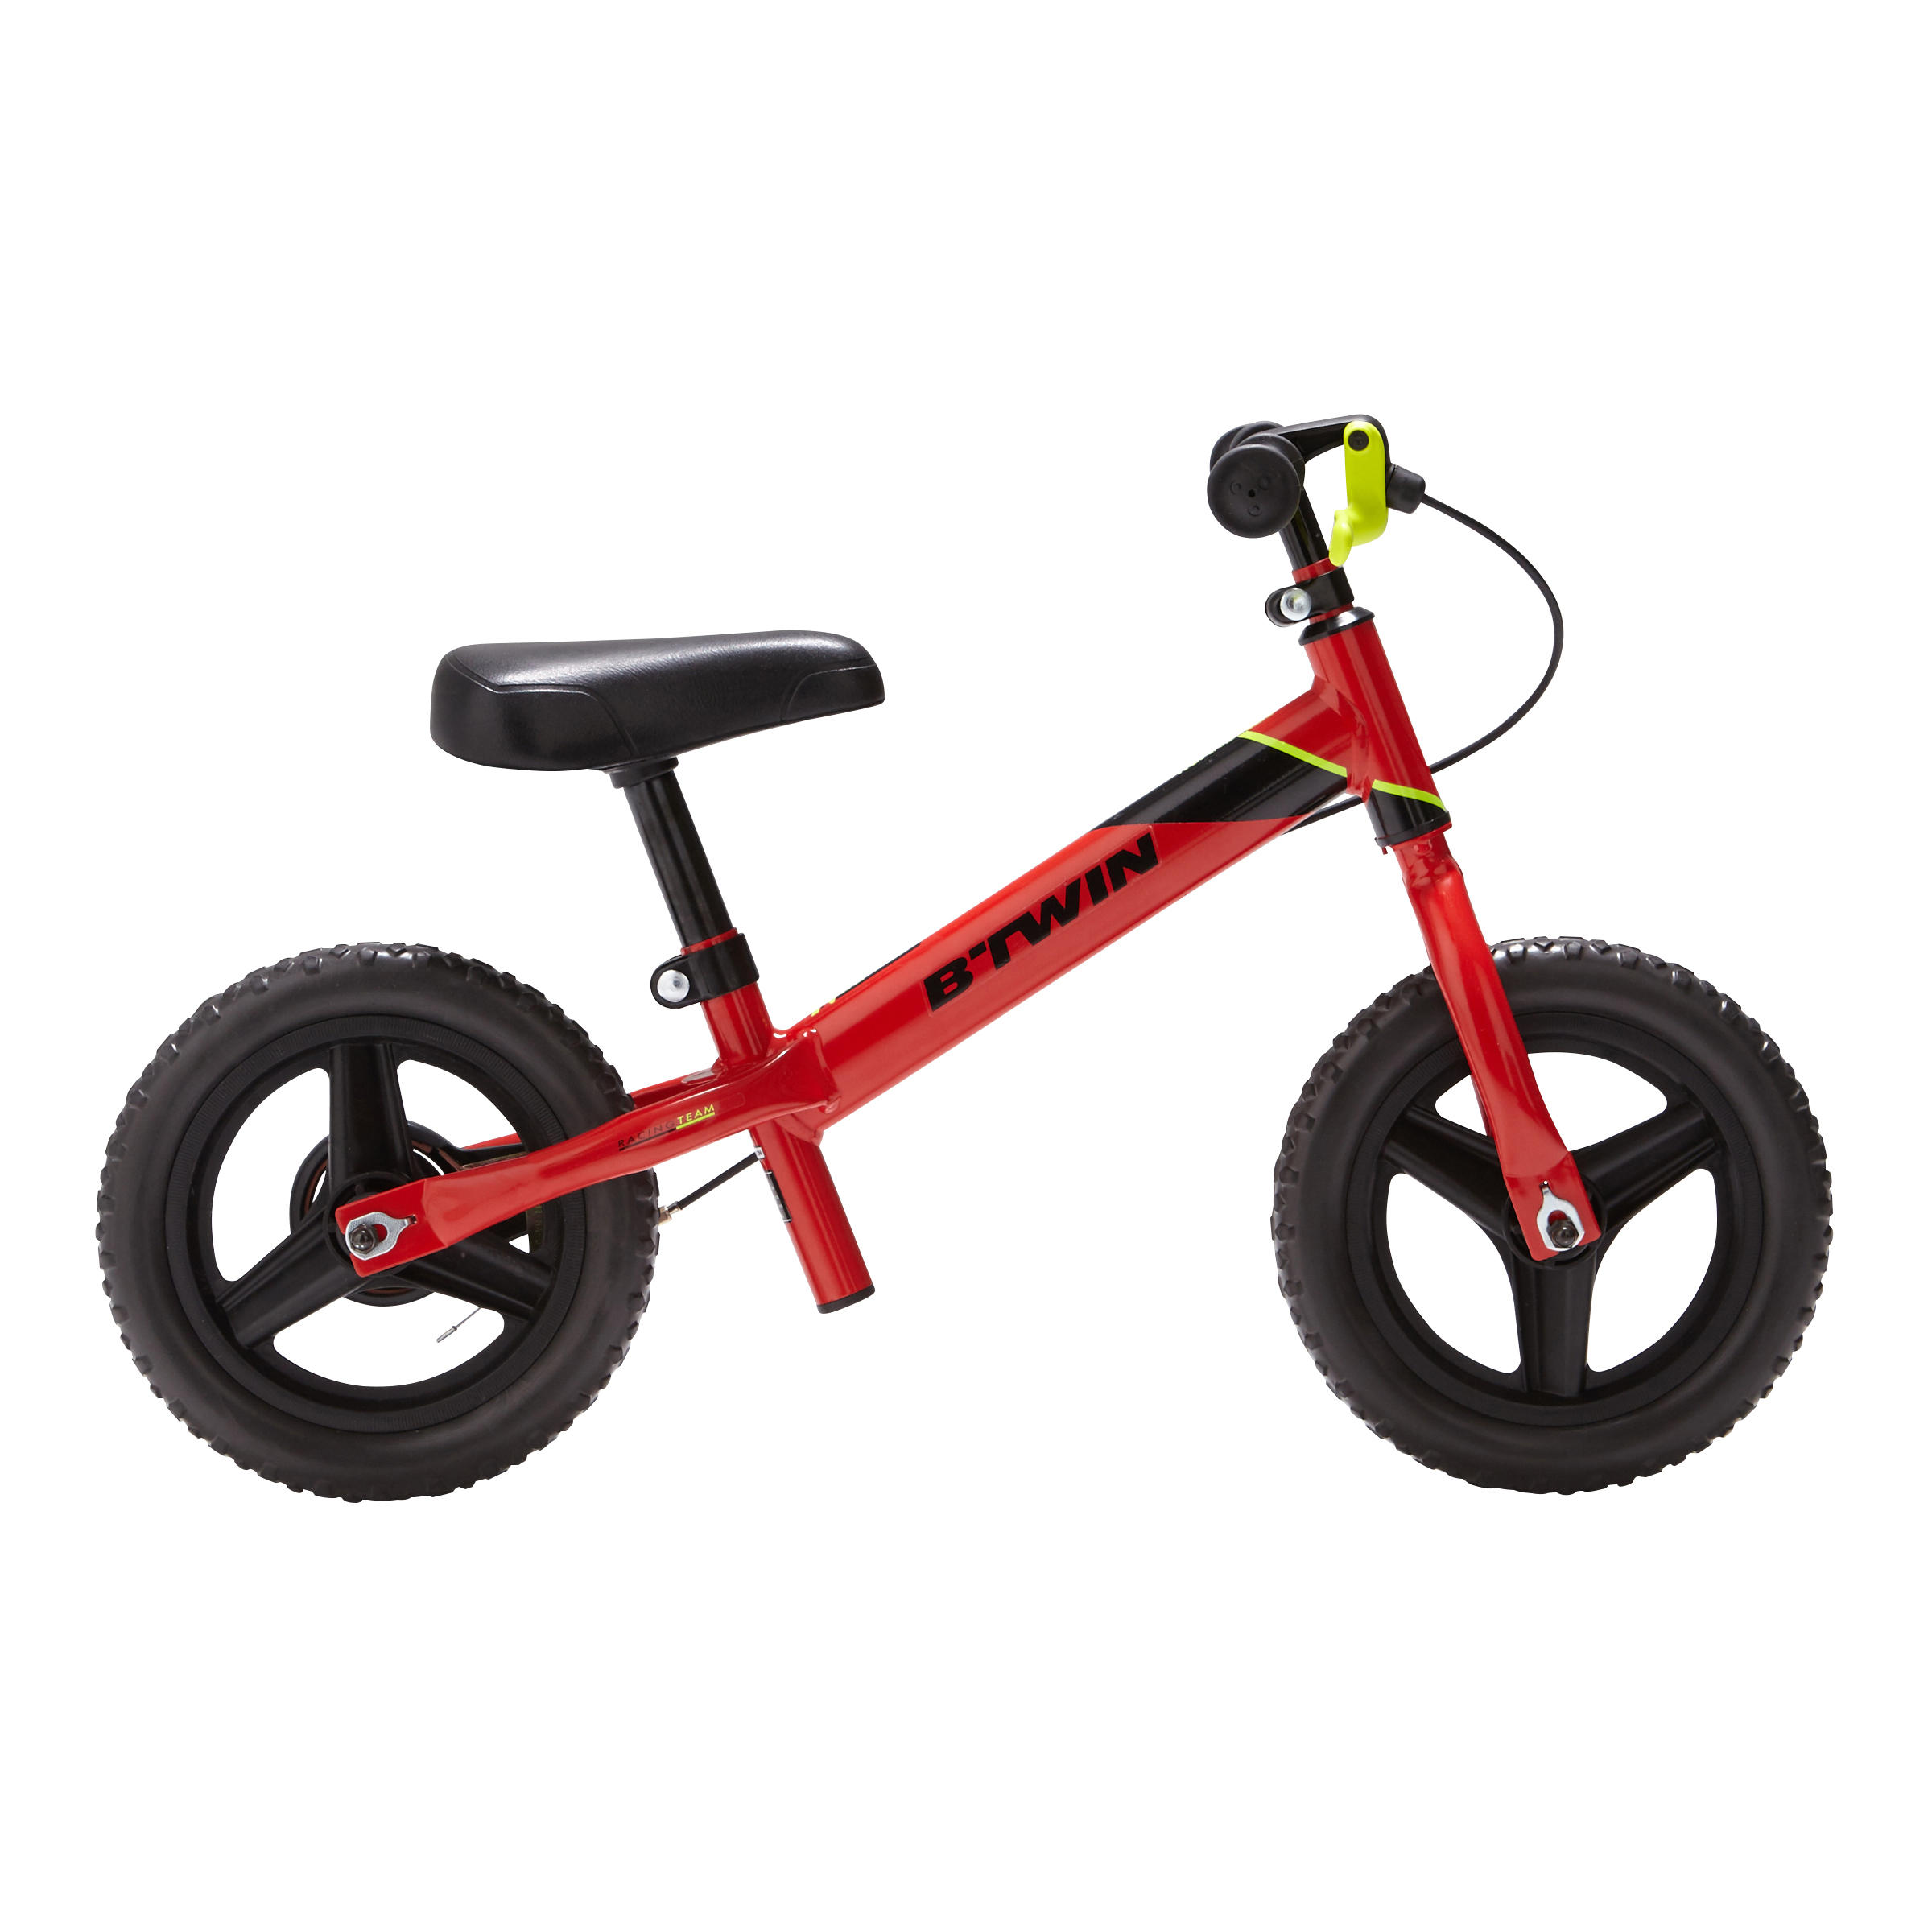 SHARESUN 12 Pulgadas 14 Pulgadas Bike Balance de Carbono del Marco de Acero sin Pedal de Bicicleta de Entrenamiento Caminar Equilibrio de Bicicletas para niños y los niños de 2 a 6 años con Freno 